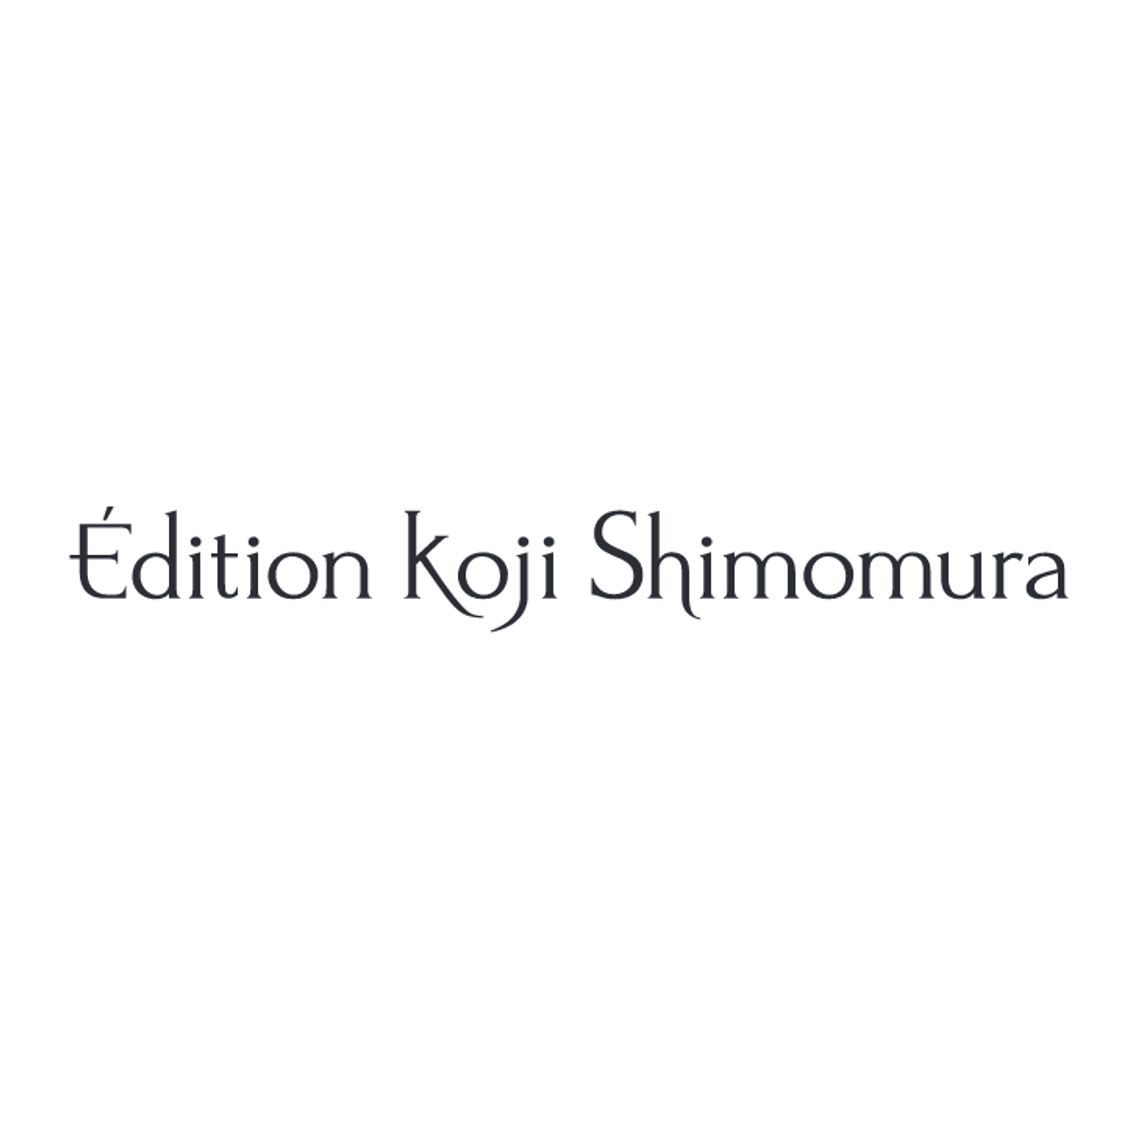 Edition Koji Shimomura　※スイーツミュージアム出店